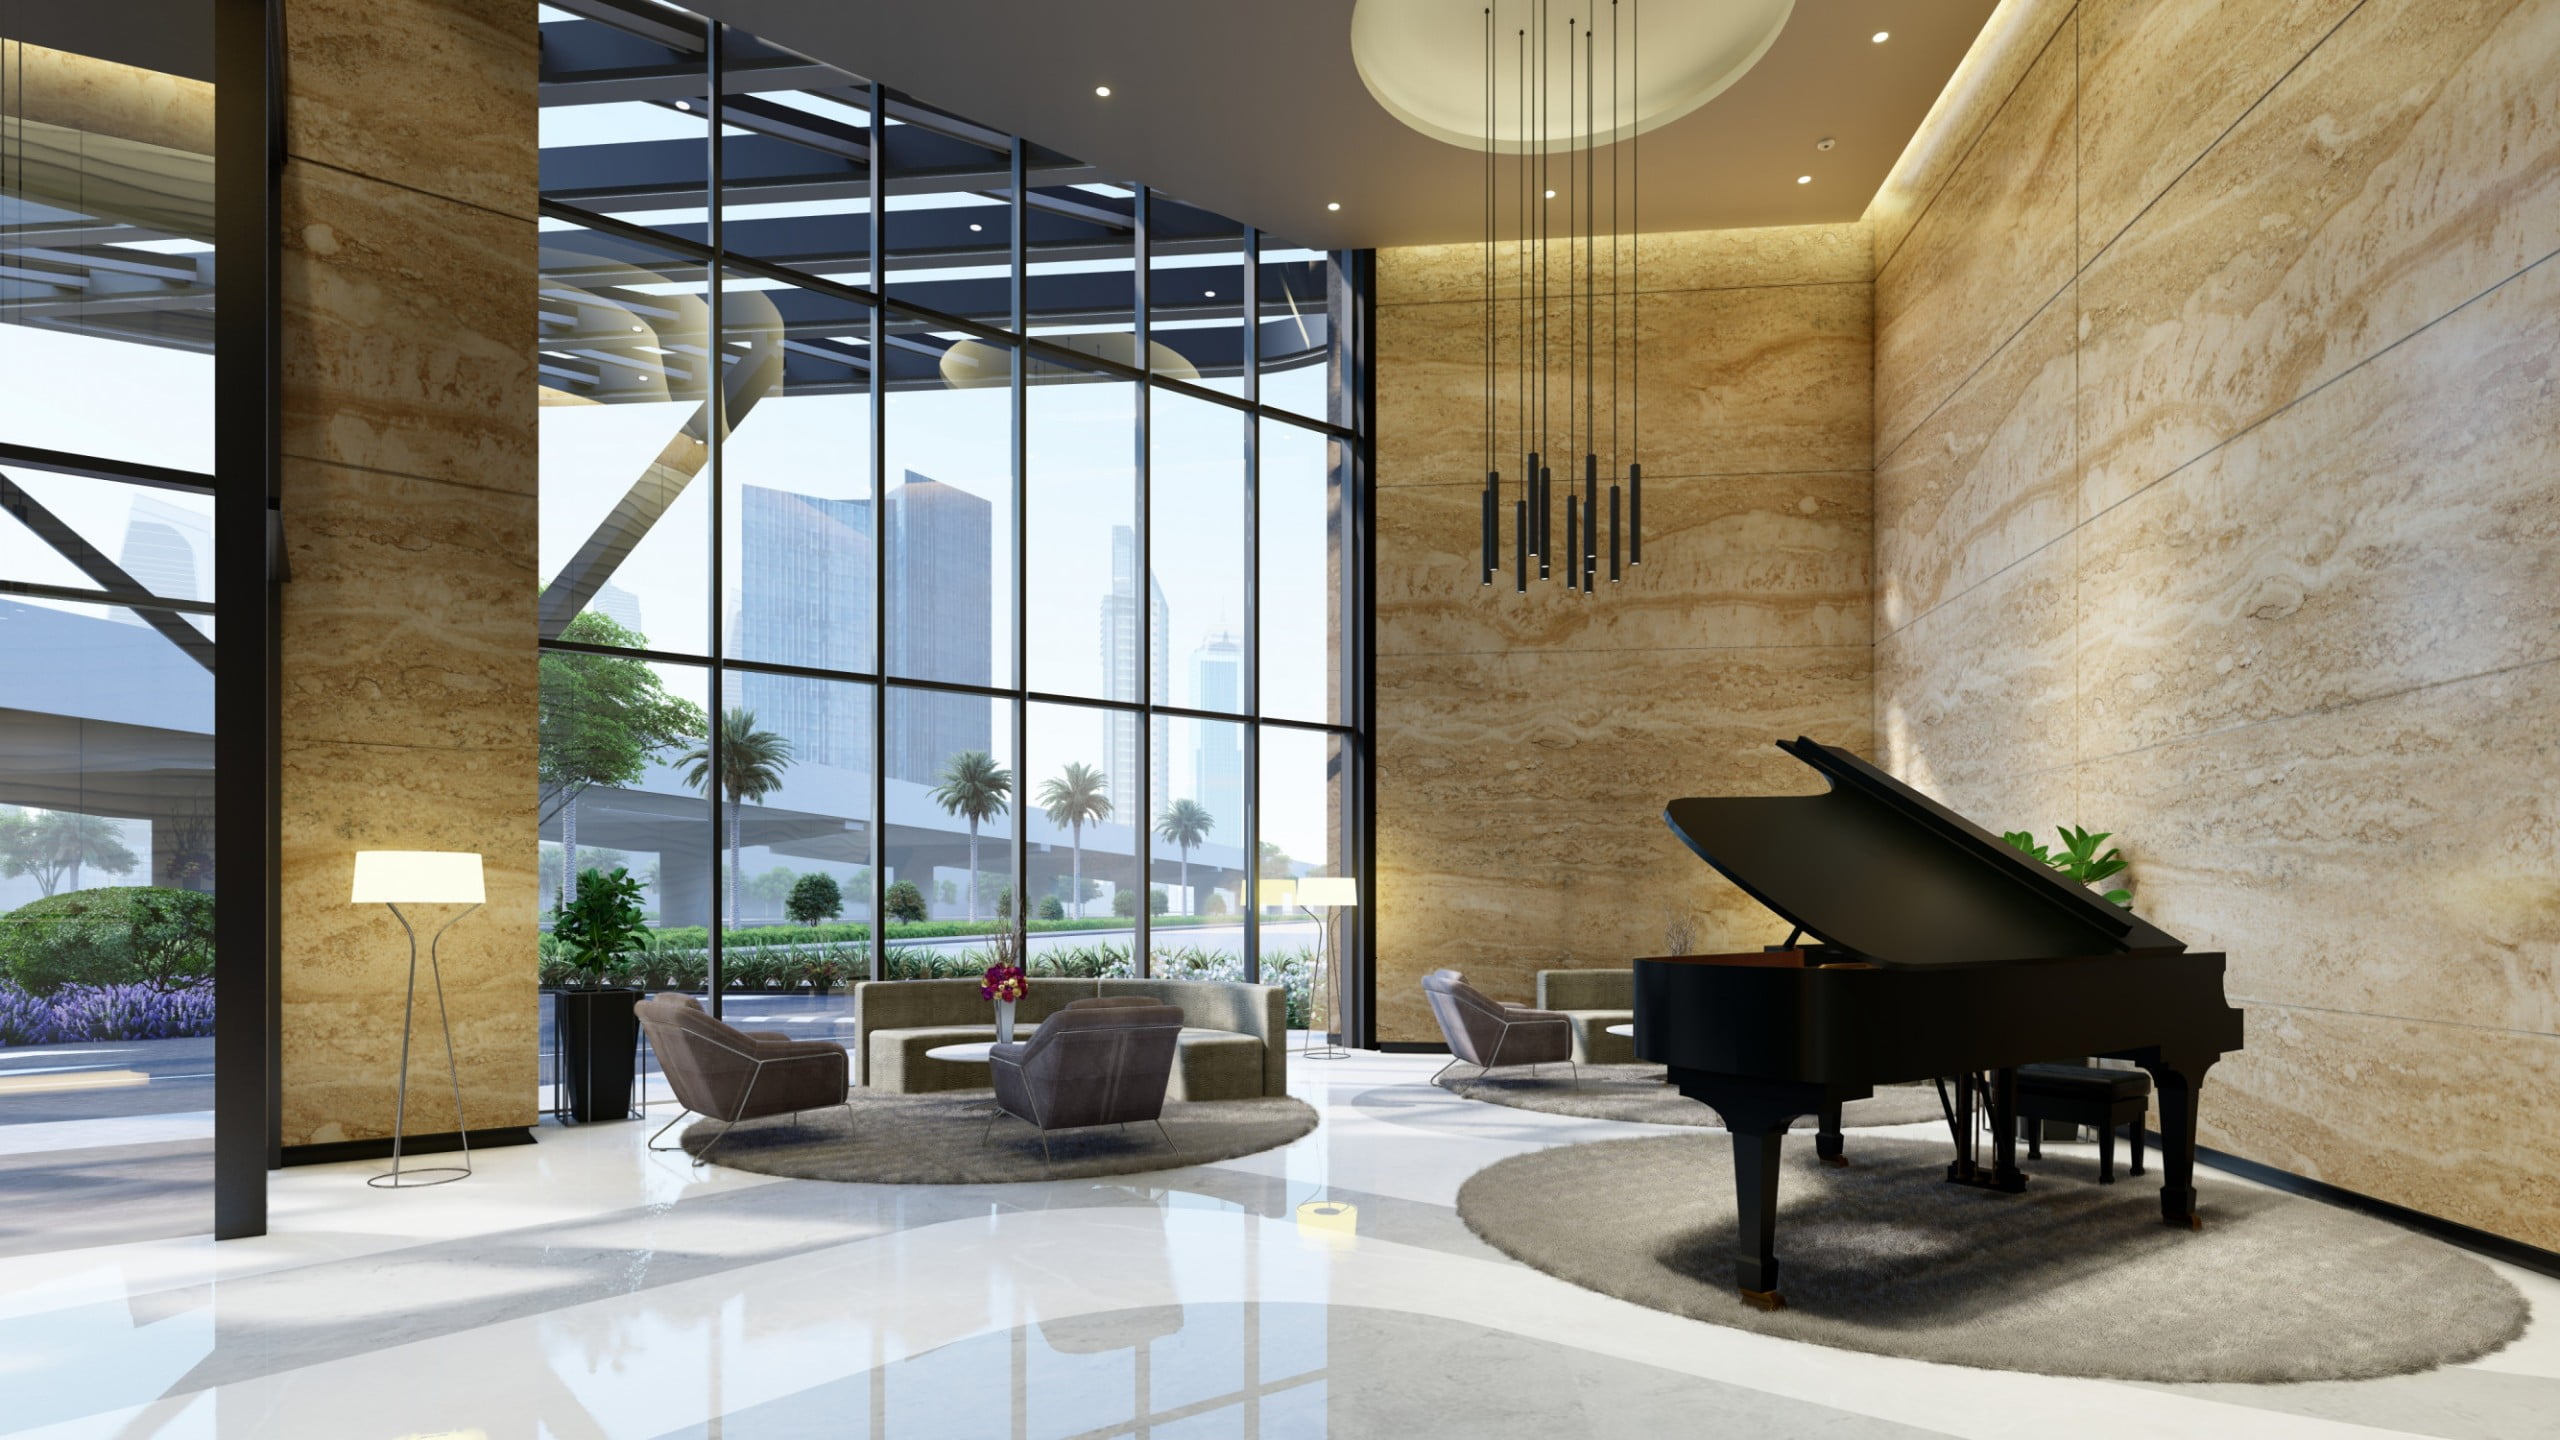 GROUND FLOOR MAIN LOBBY VIEWS 12 scaled - Immobilier Dubai